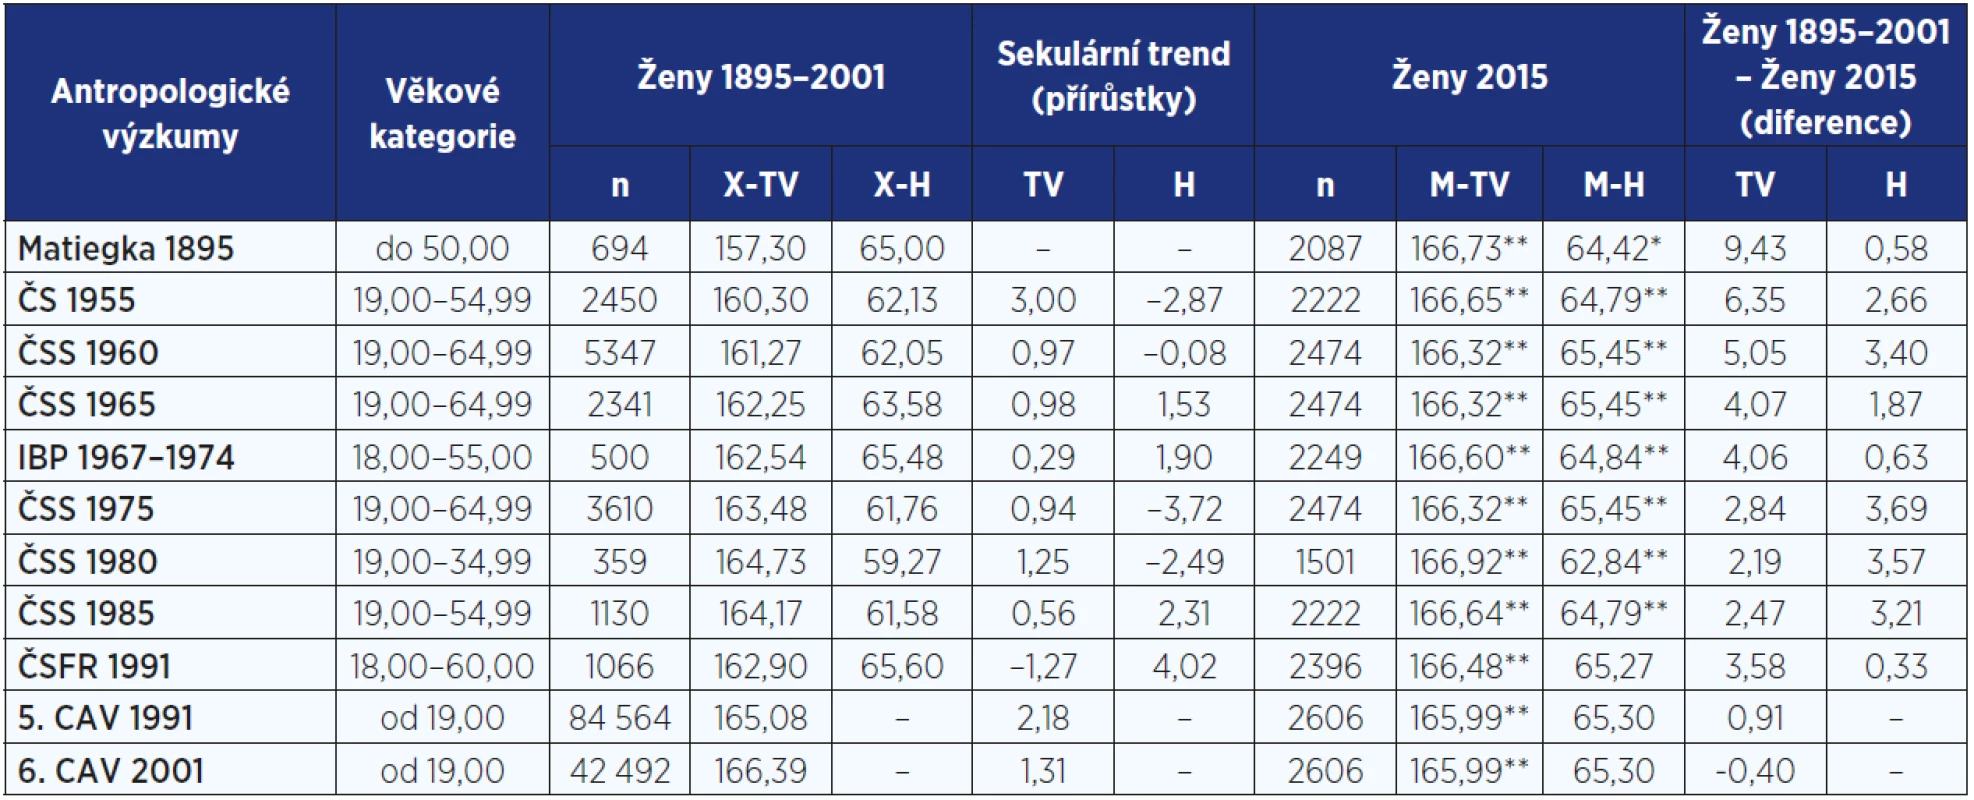 Sekulární trend tělesné výšky (cm) a hmotnosti (kg) u žen od roku 1895 do roku 2015